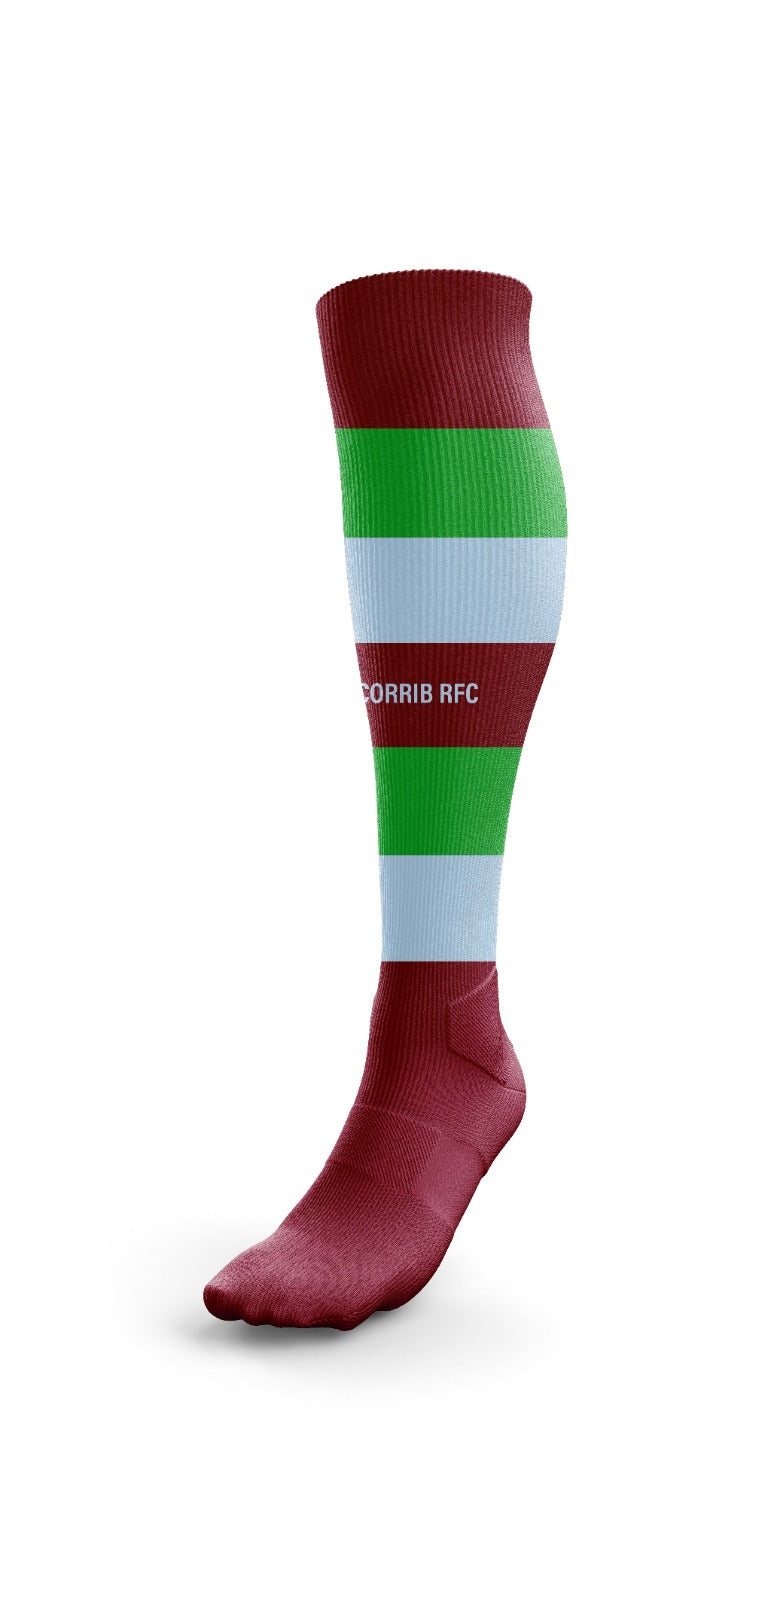 Corrib RFC - Rugby Socks